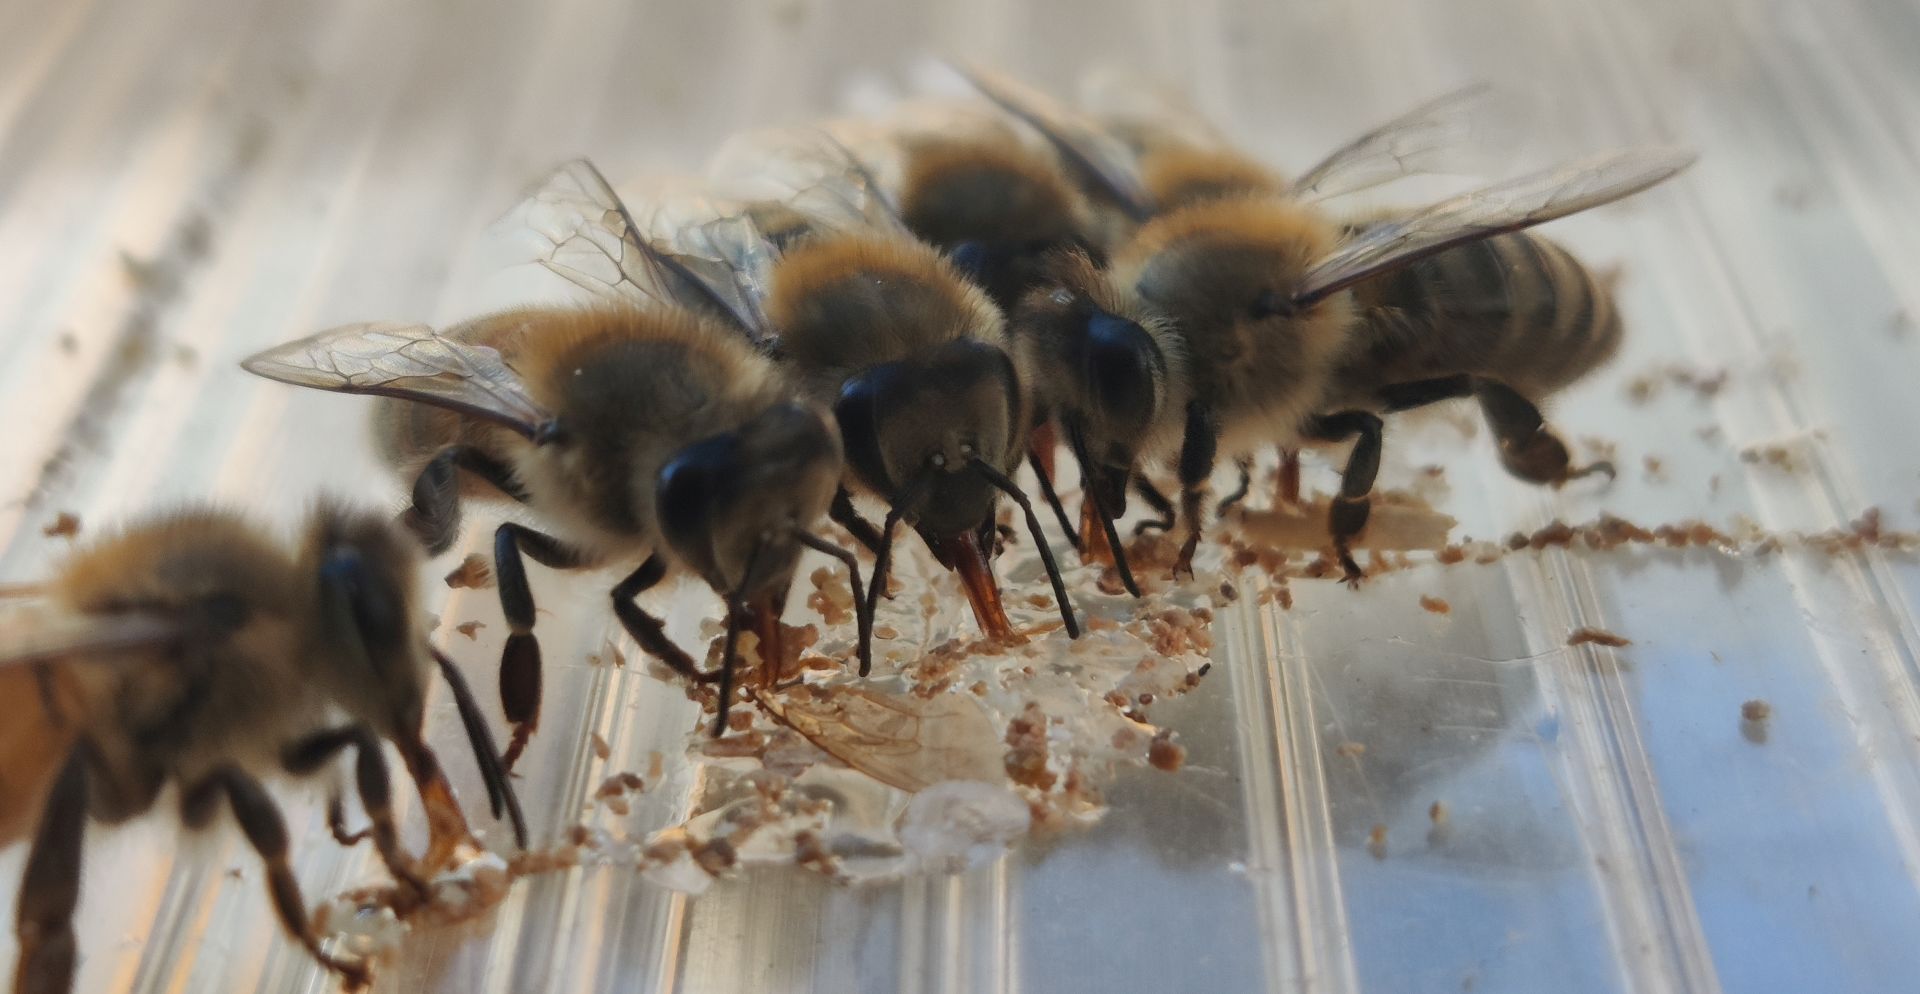 vier Bienen die über ihren Rüssel futter aufnehmen